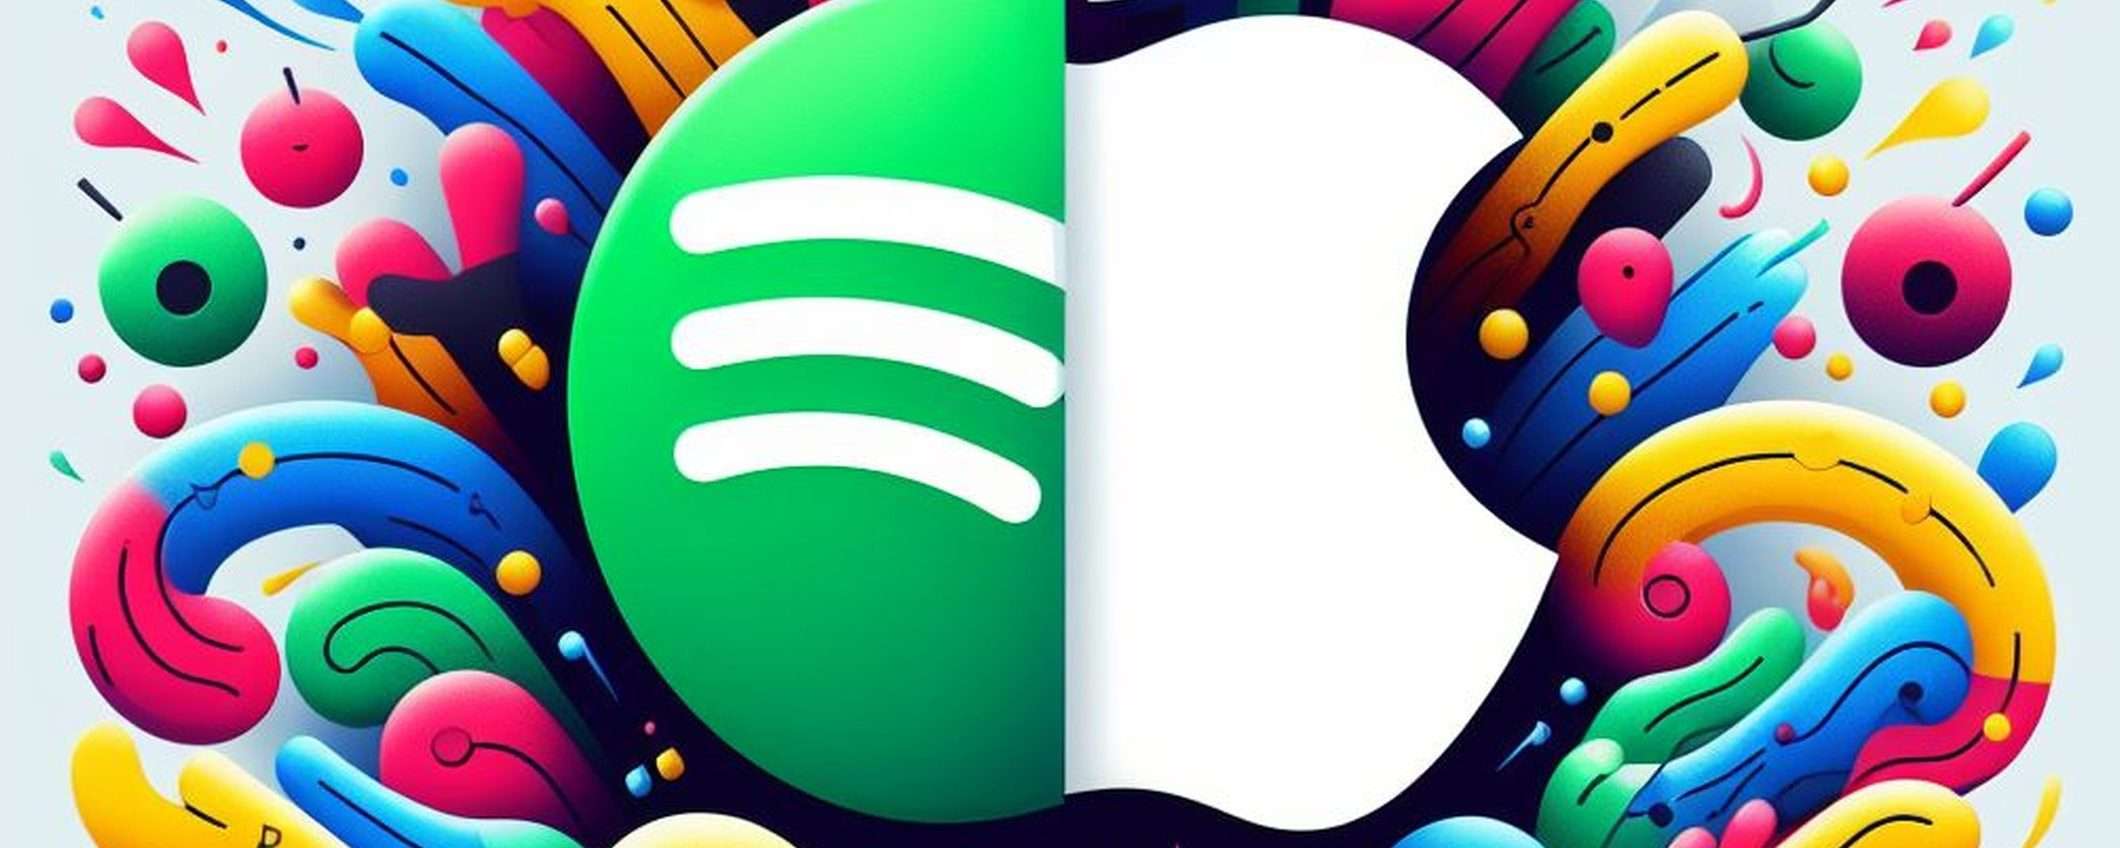 Apple rigetta la nuova app di Spotify in Europa